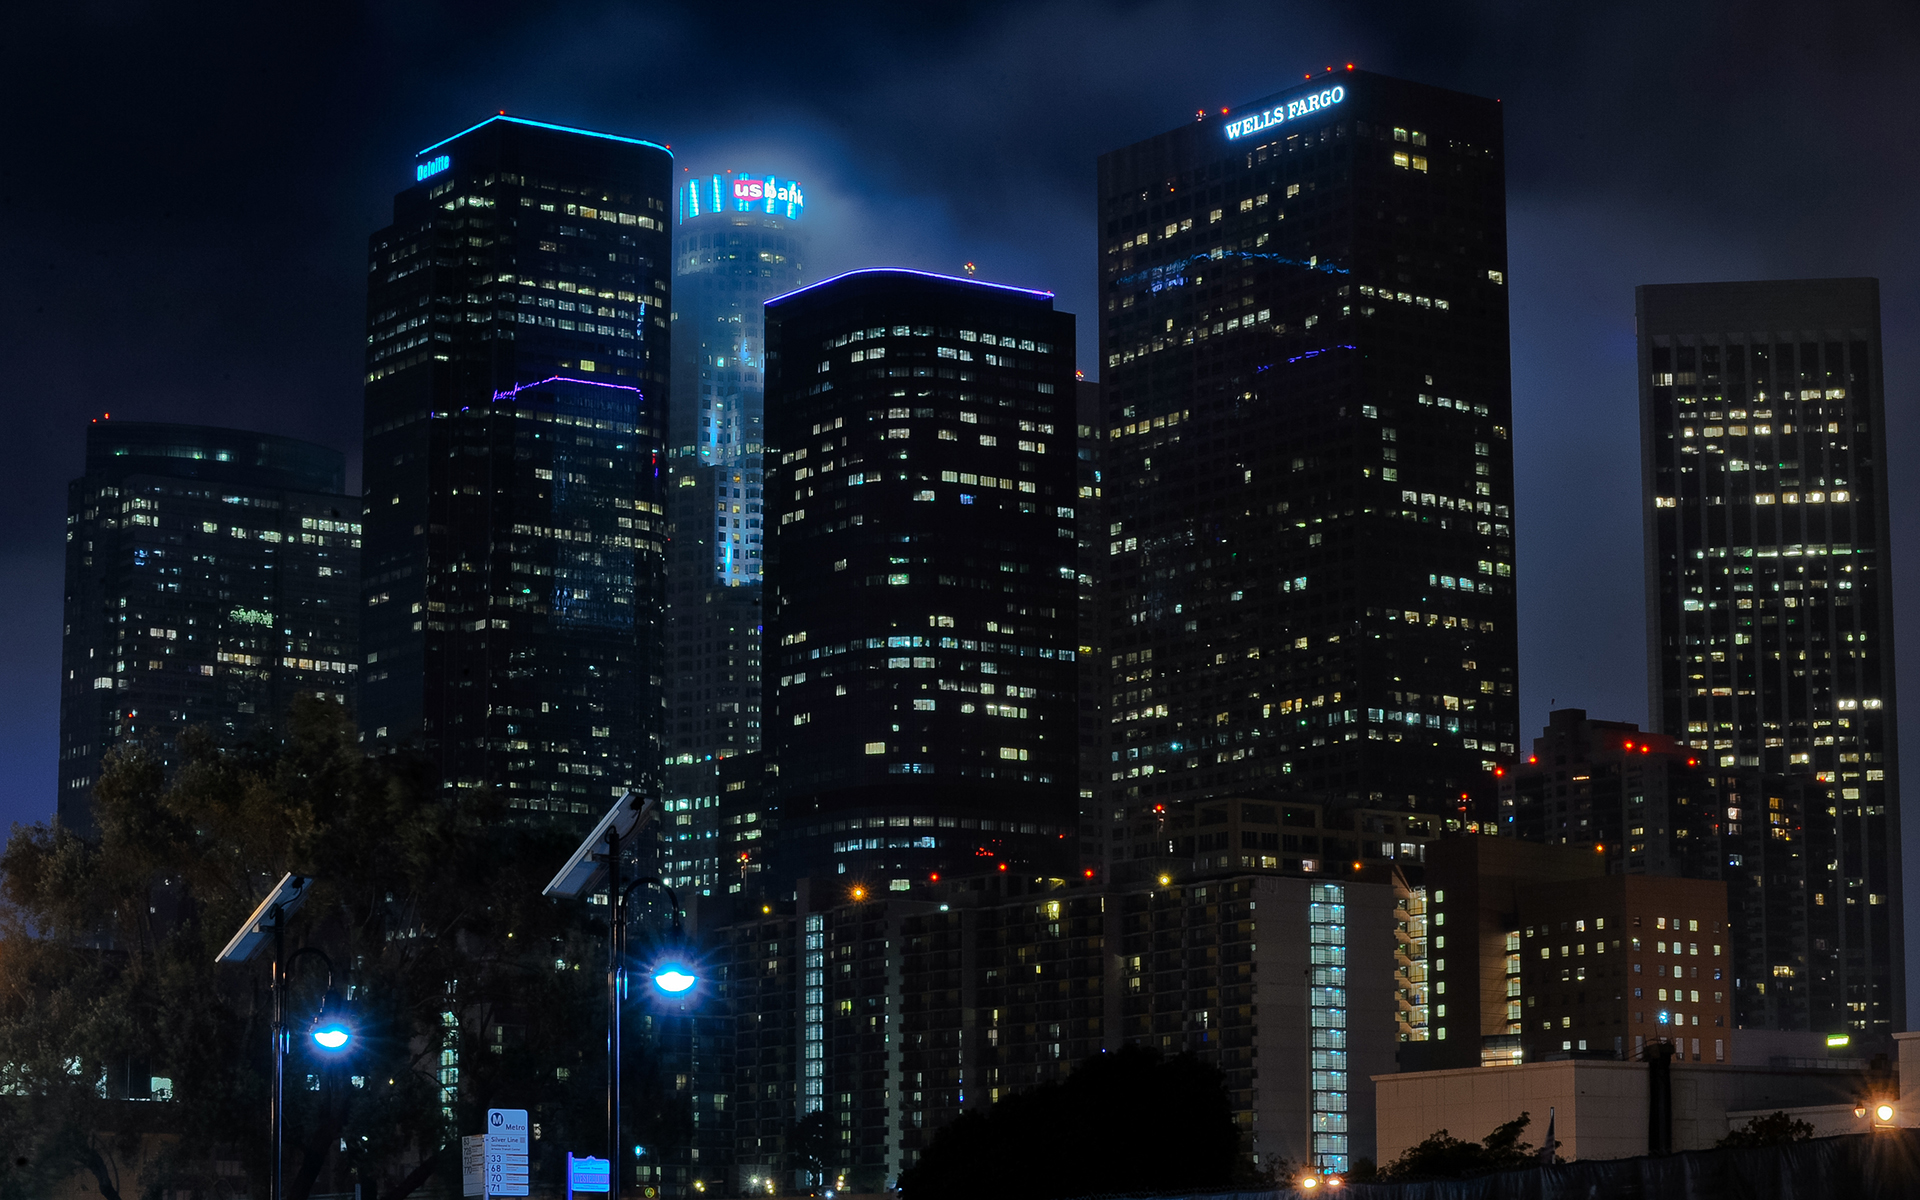 Los Angeles La Buildings Skyscrapers Night R Wallpaper Background